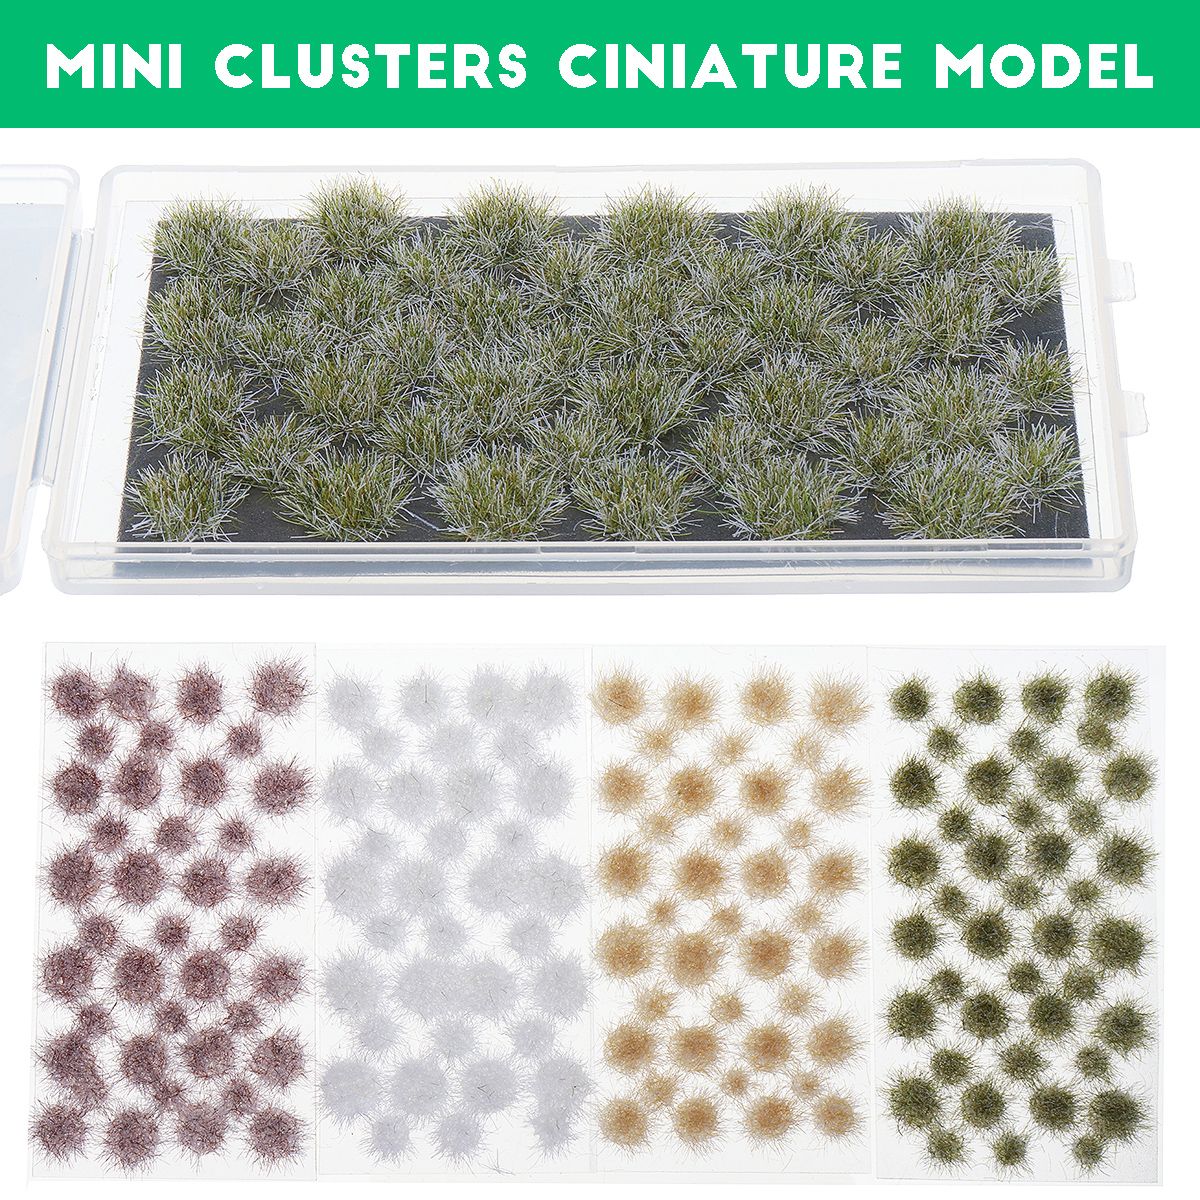 Mini-Clusters-Ciniature-Model-Military-Model-Scenario-Train-Sand-Table-Diy-Modelling-Architecture-Sc-1731307